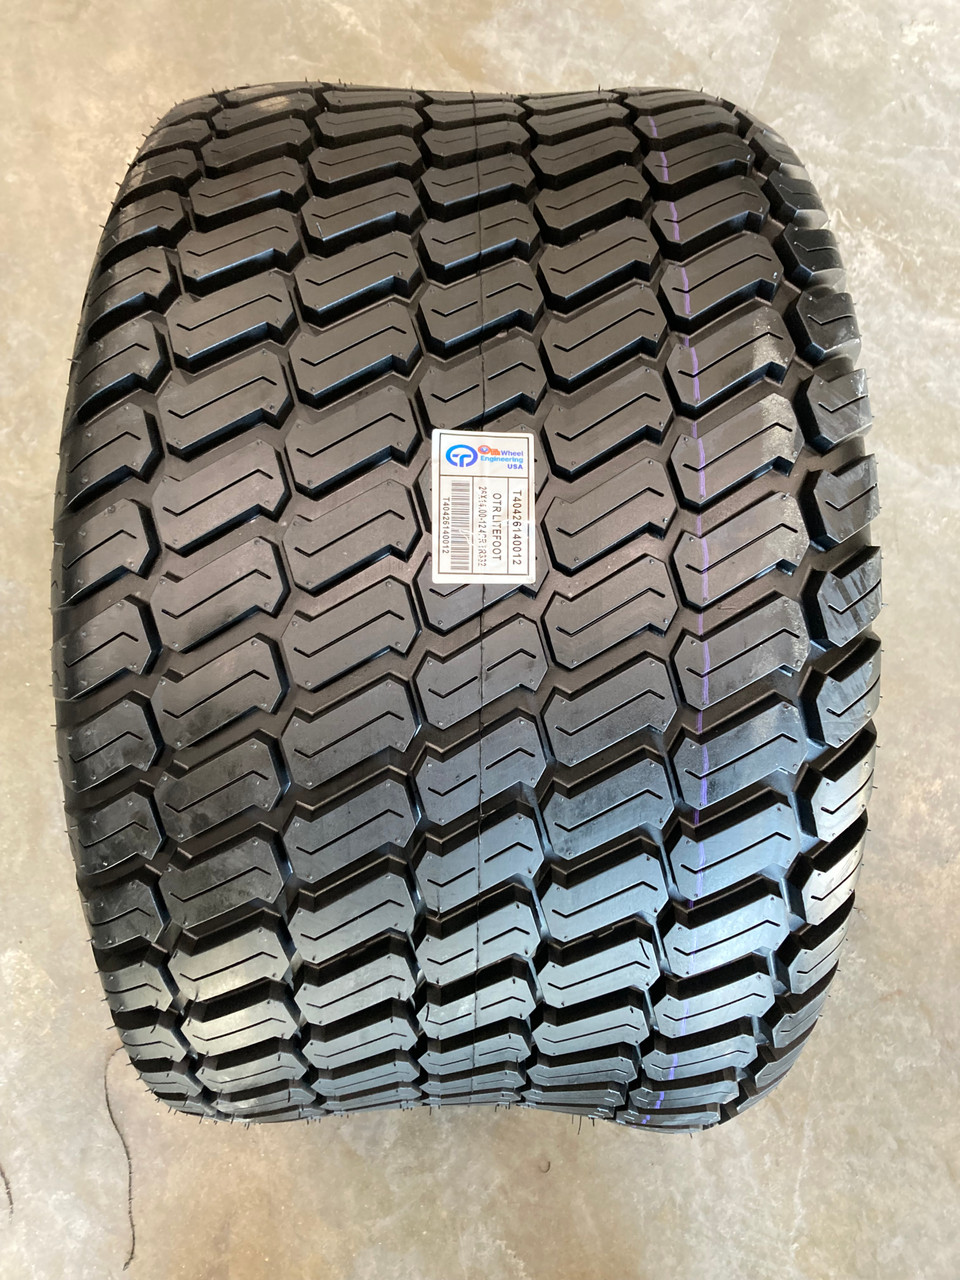 New Turf Tire 26 14.00 12 OTR GrassMaster 4 ply 26x14-12 